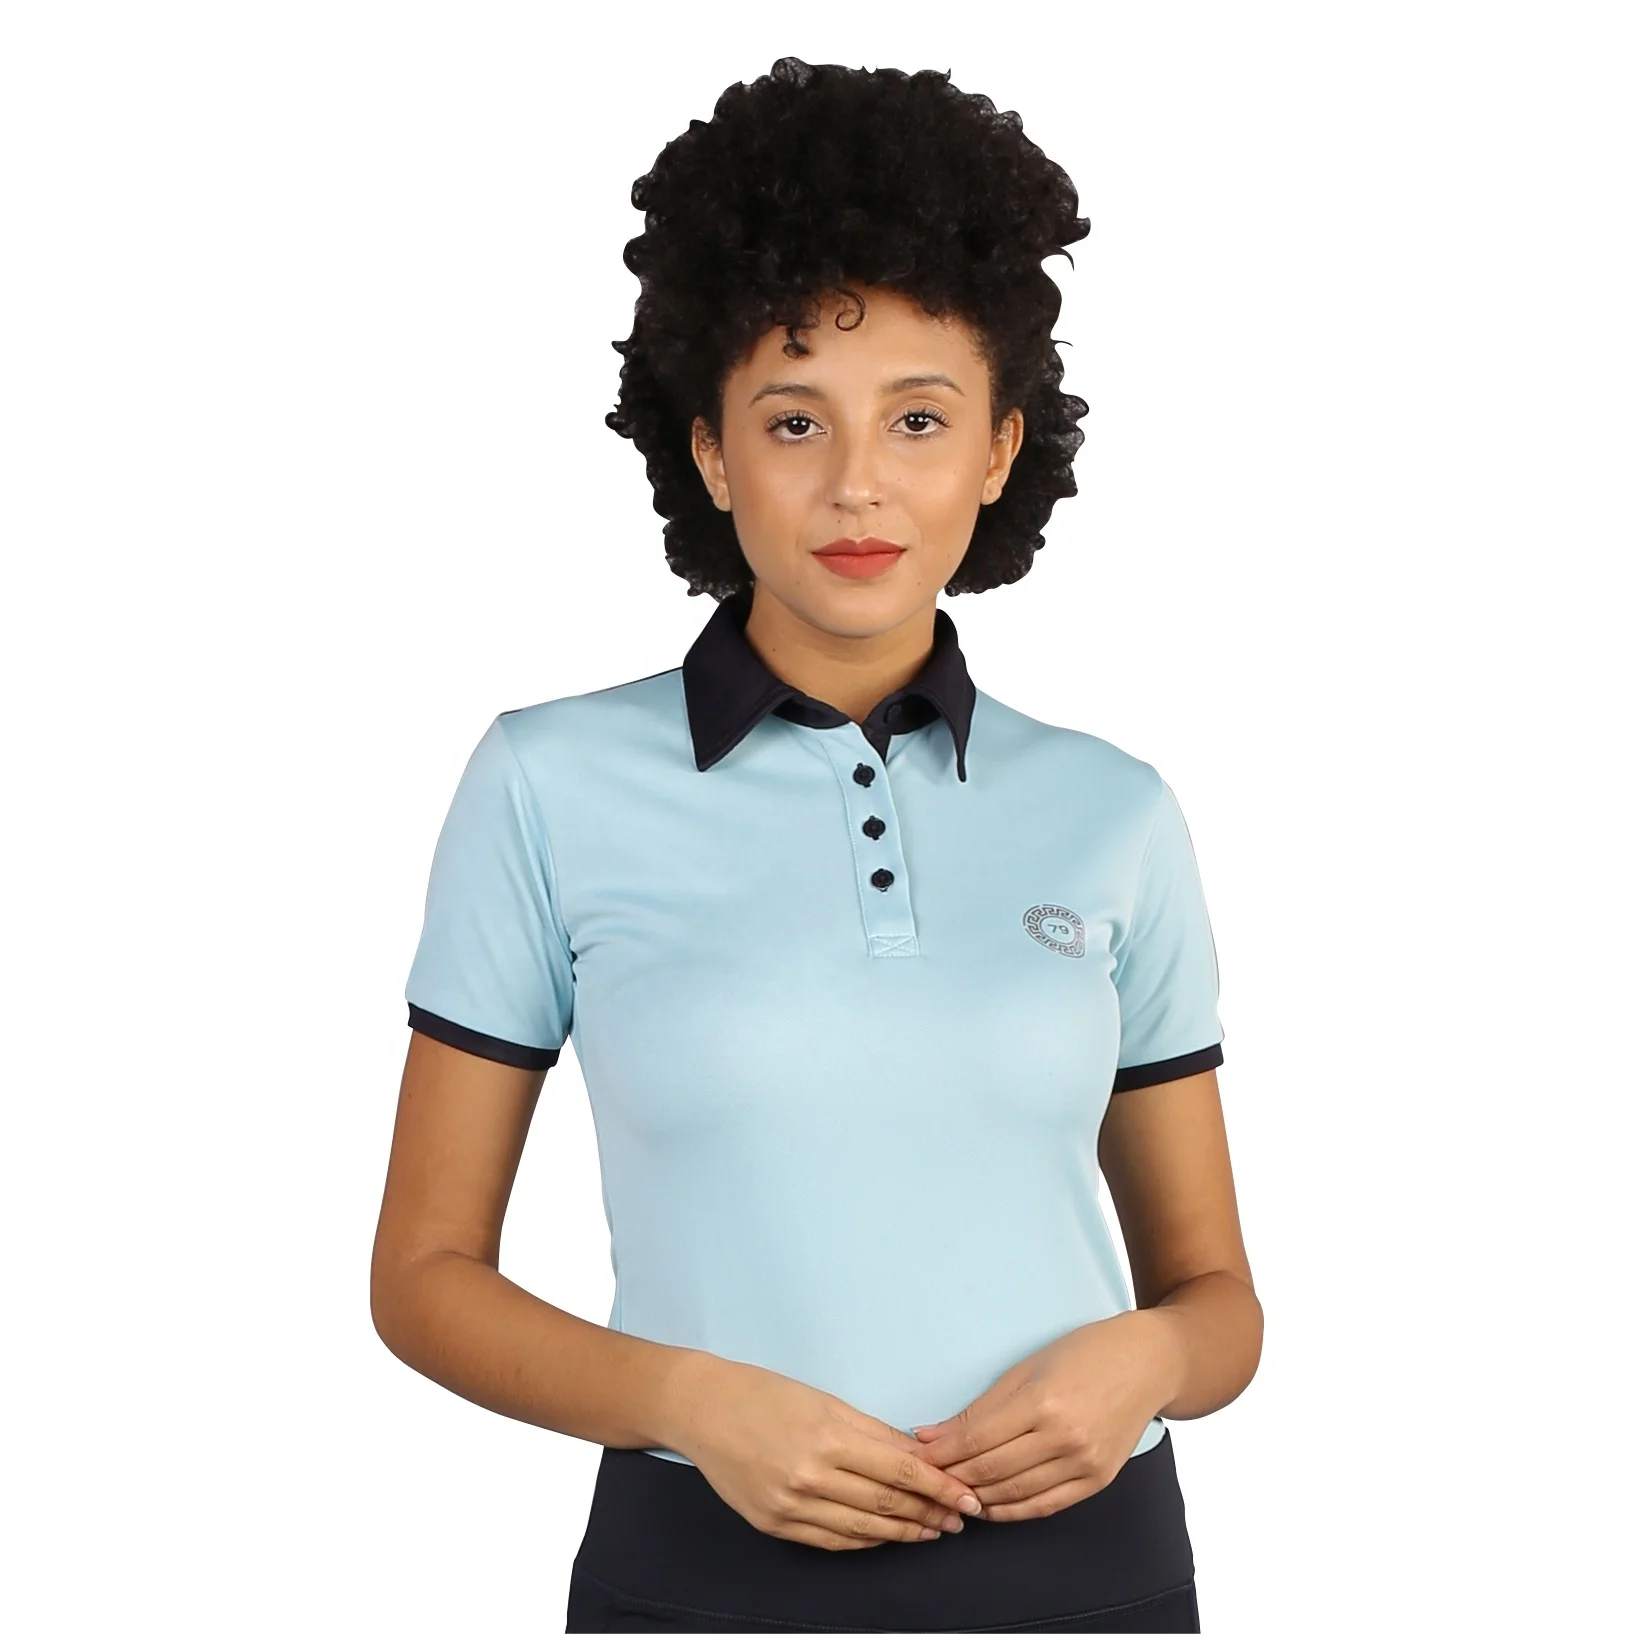 Camiseta Tipo Polo Para Mujer - En Polo Camiseta,Caballo Caballo Polo Camiseta,Las Mujeres Polo Product on Alibaba.com